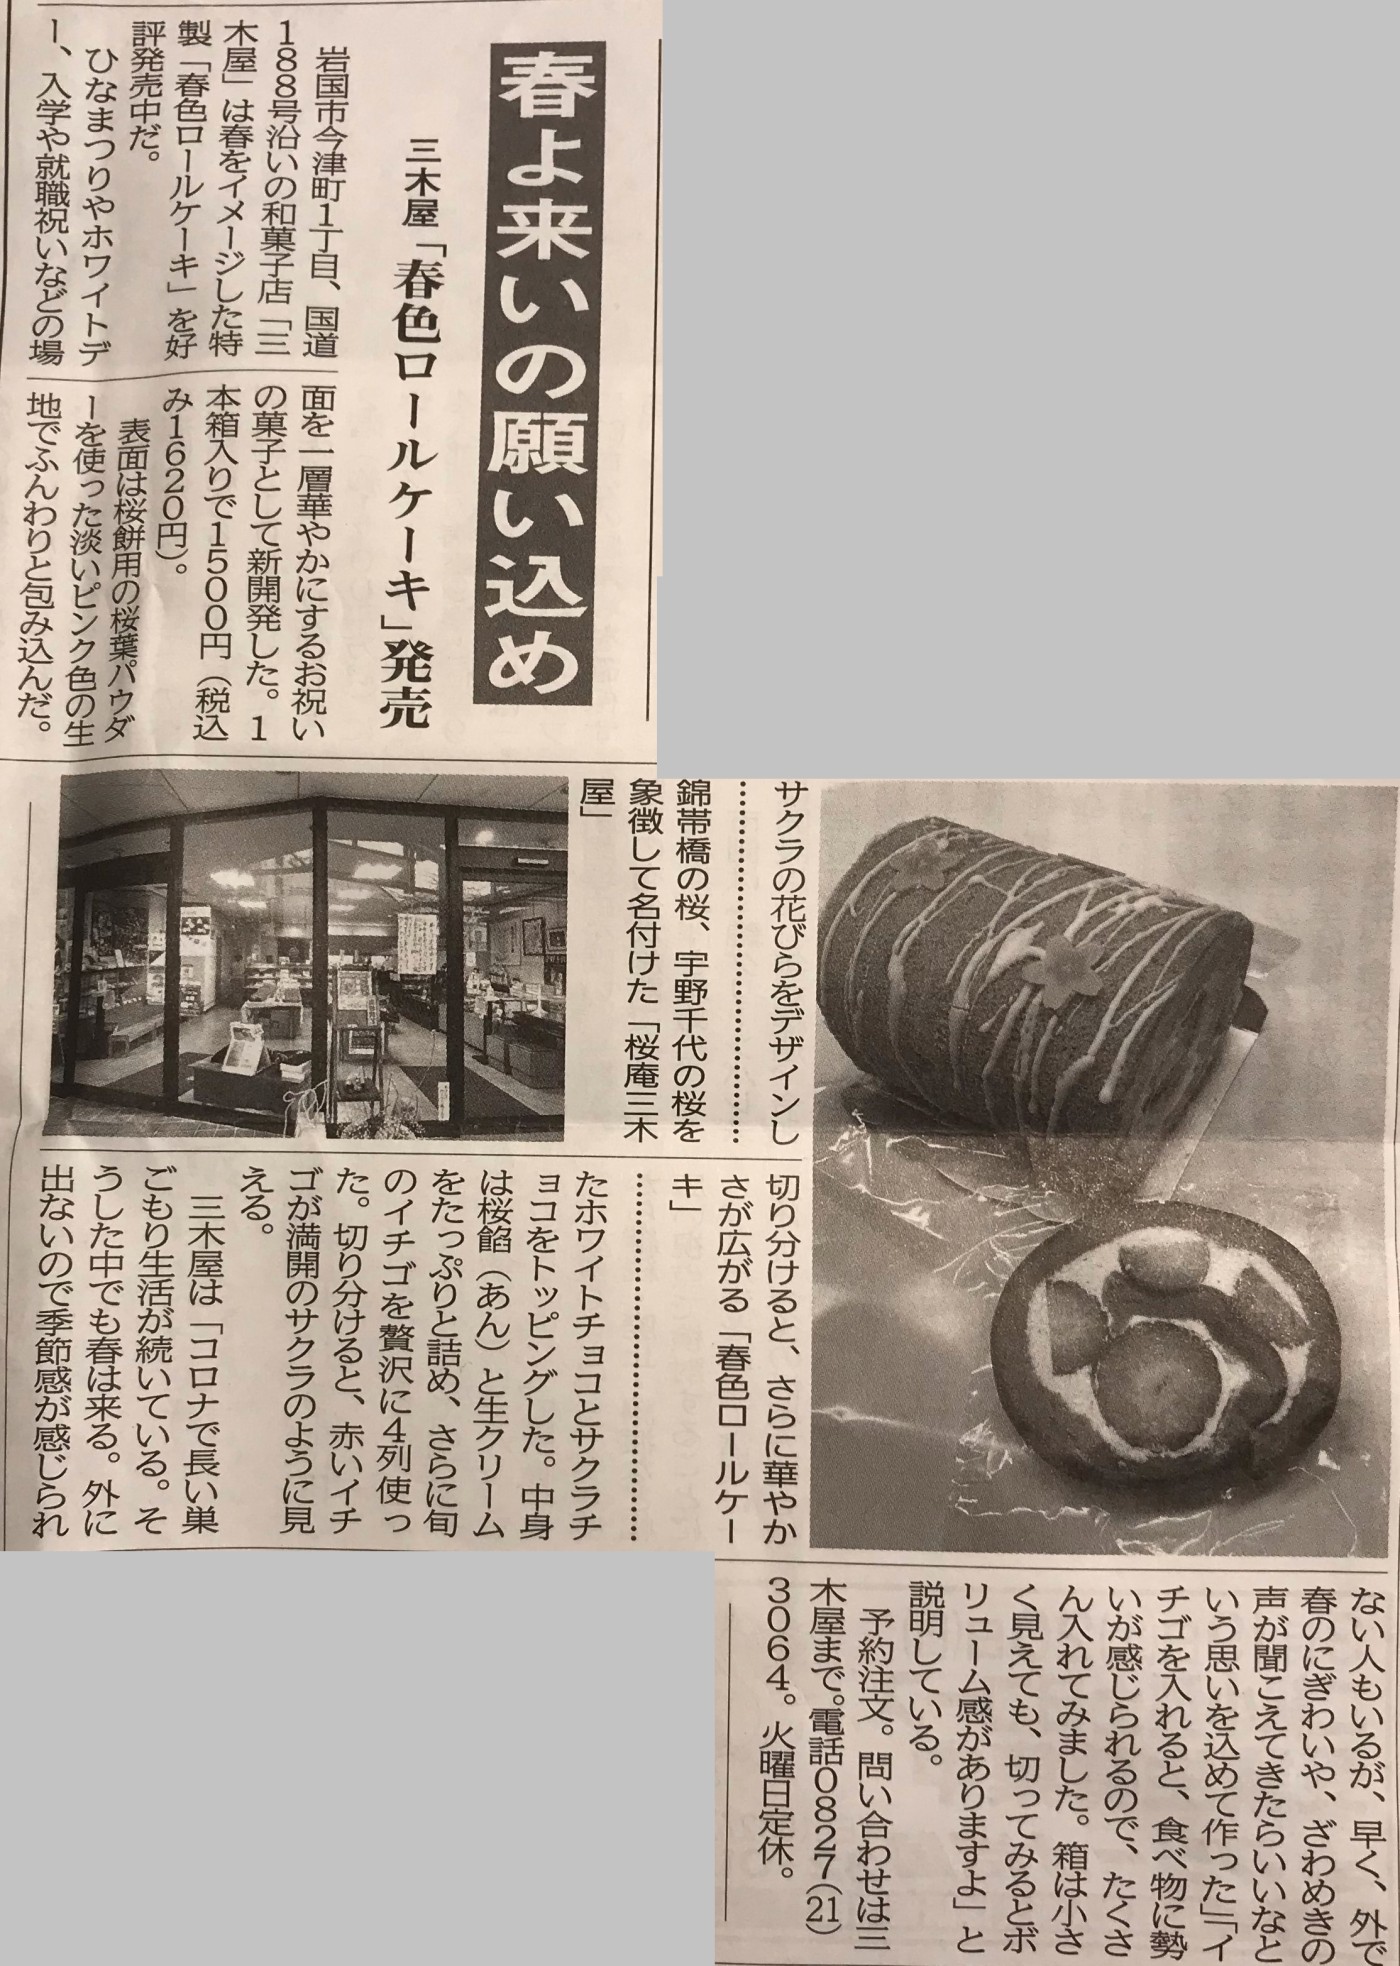 「春色ロールケーキが新聞に掲載されました」関連画像